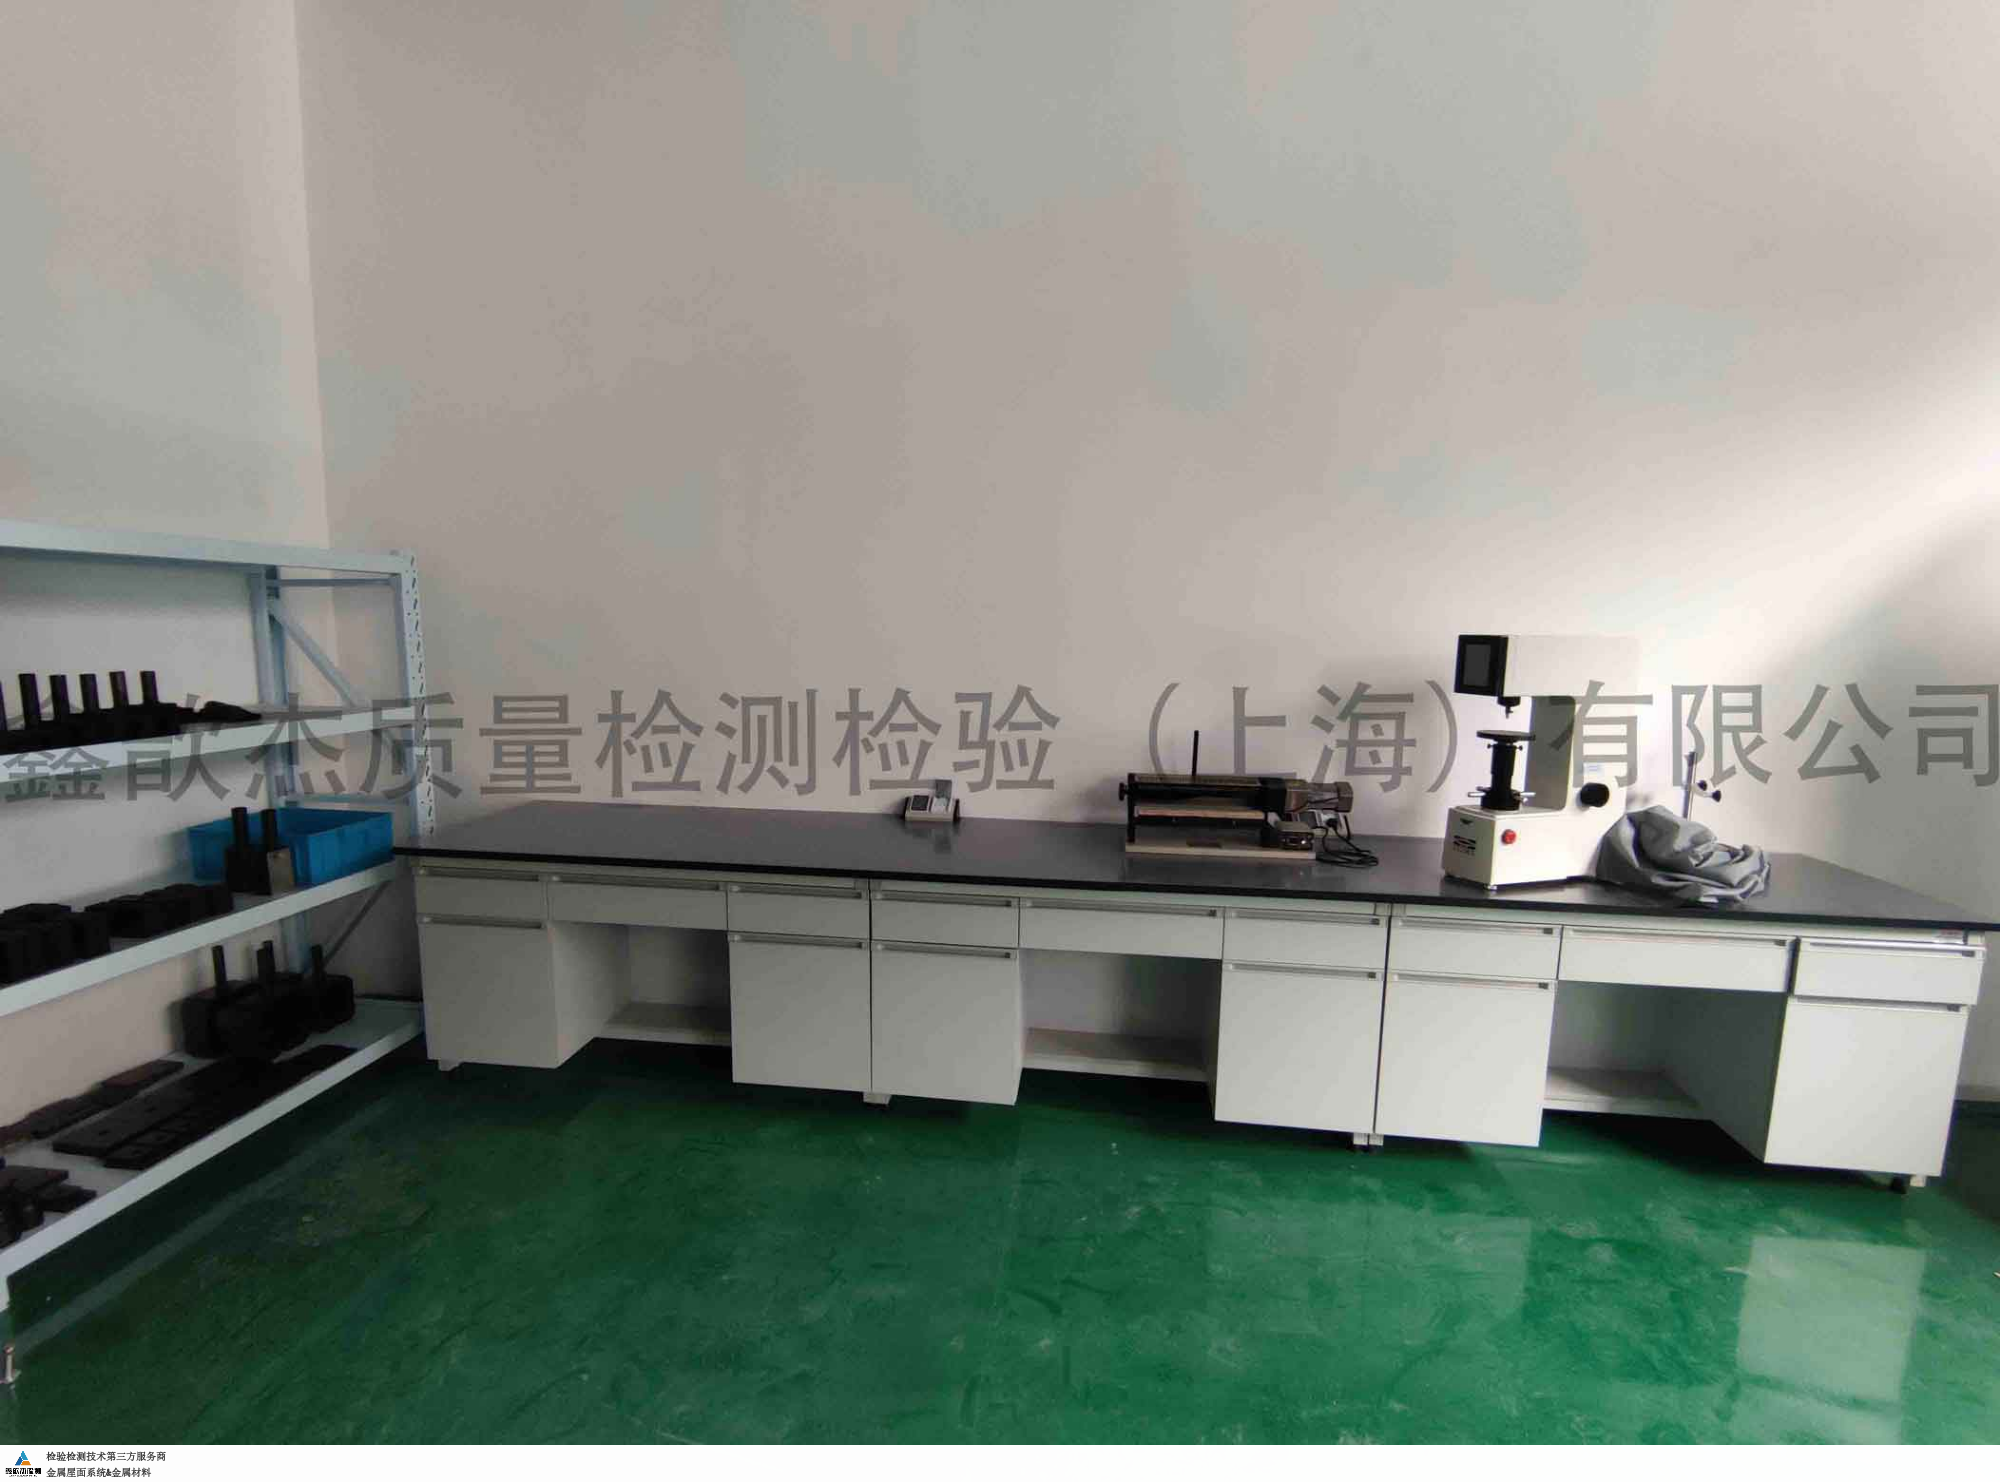 上海国内金属材料检验检测公司,金属材料检验检测